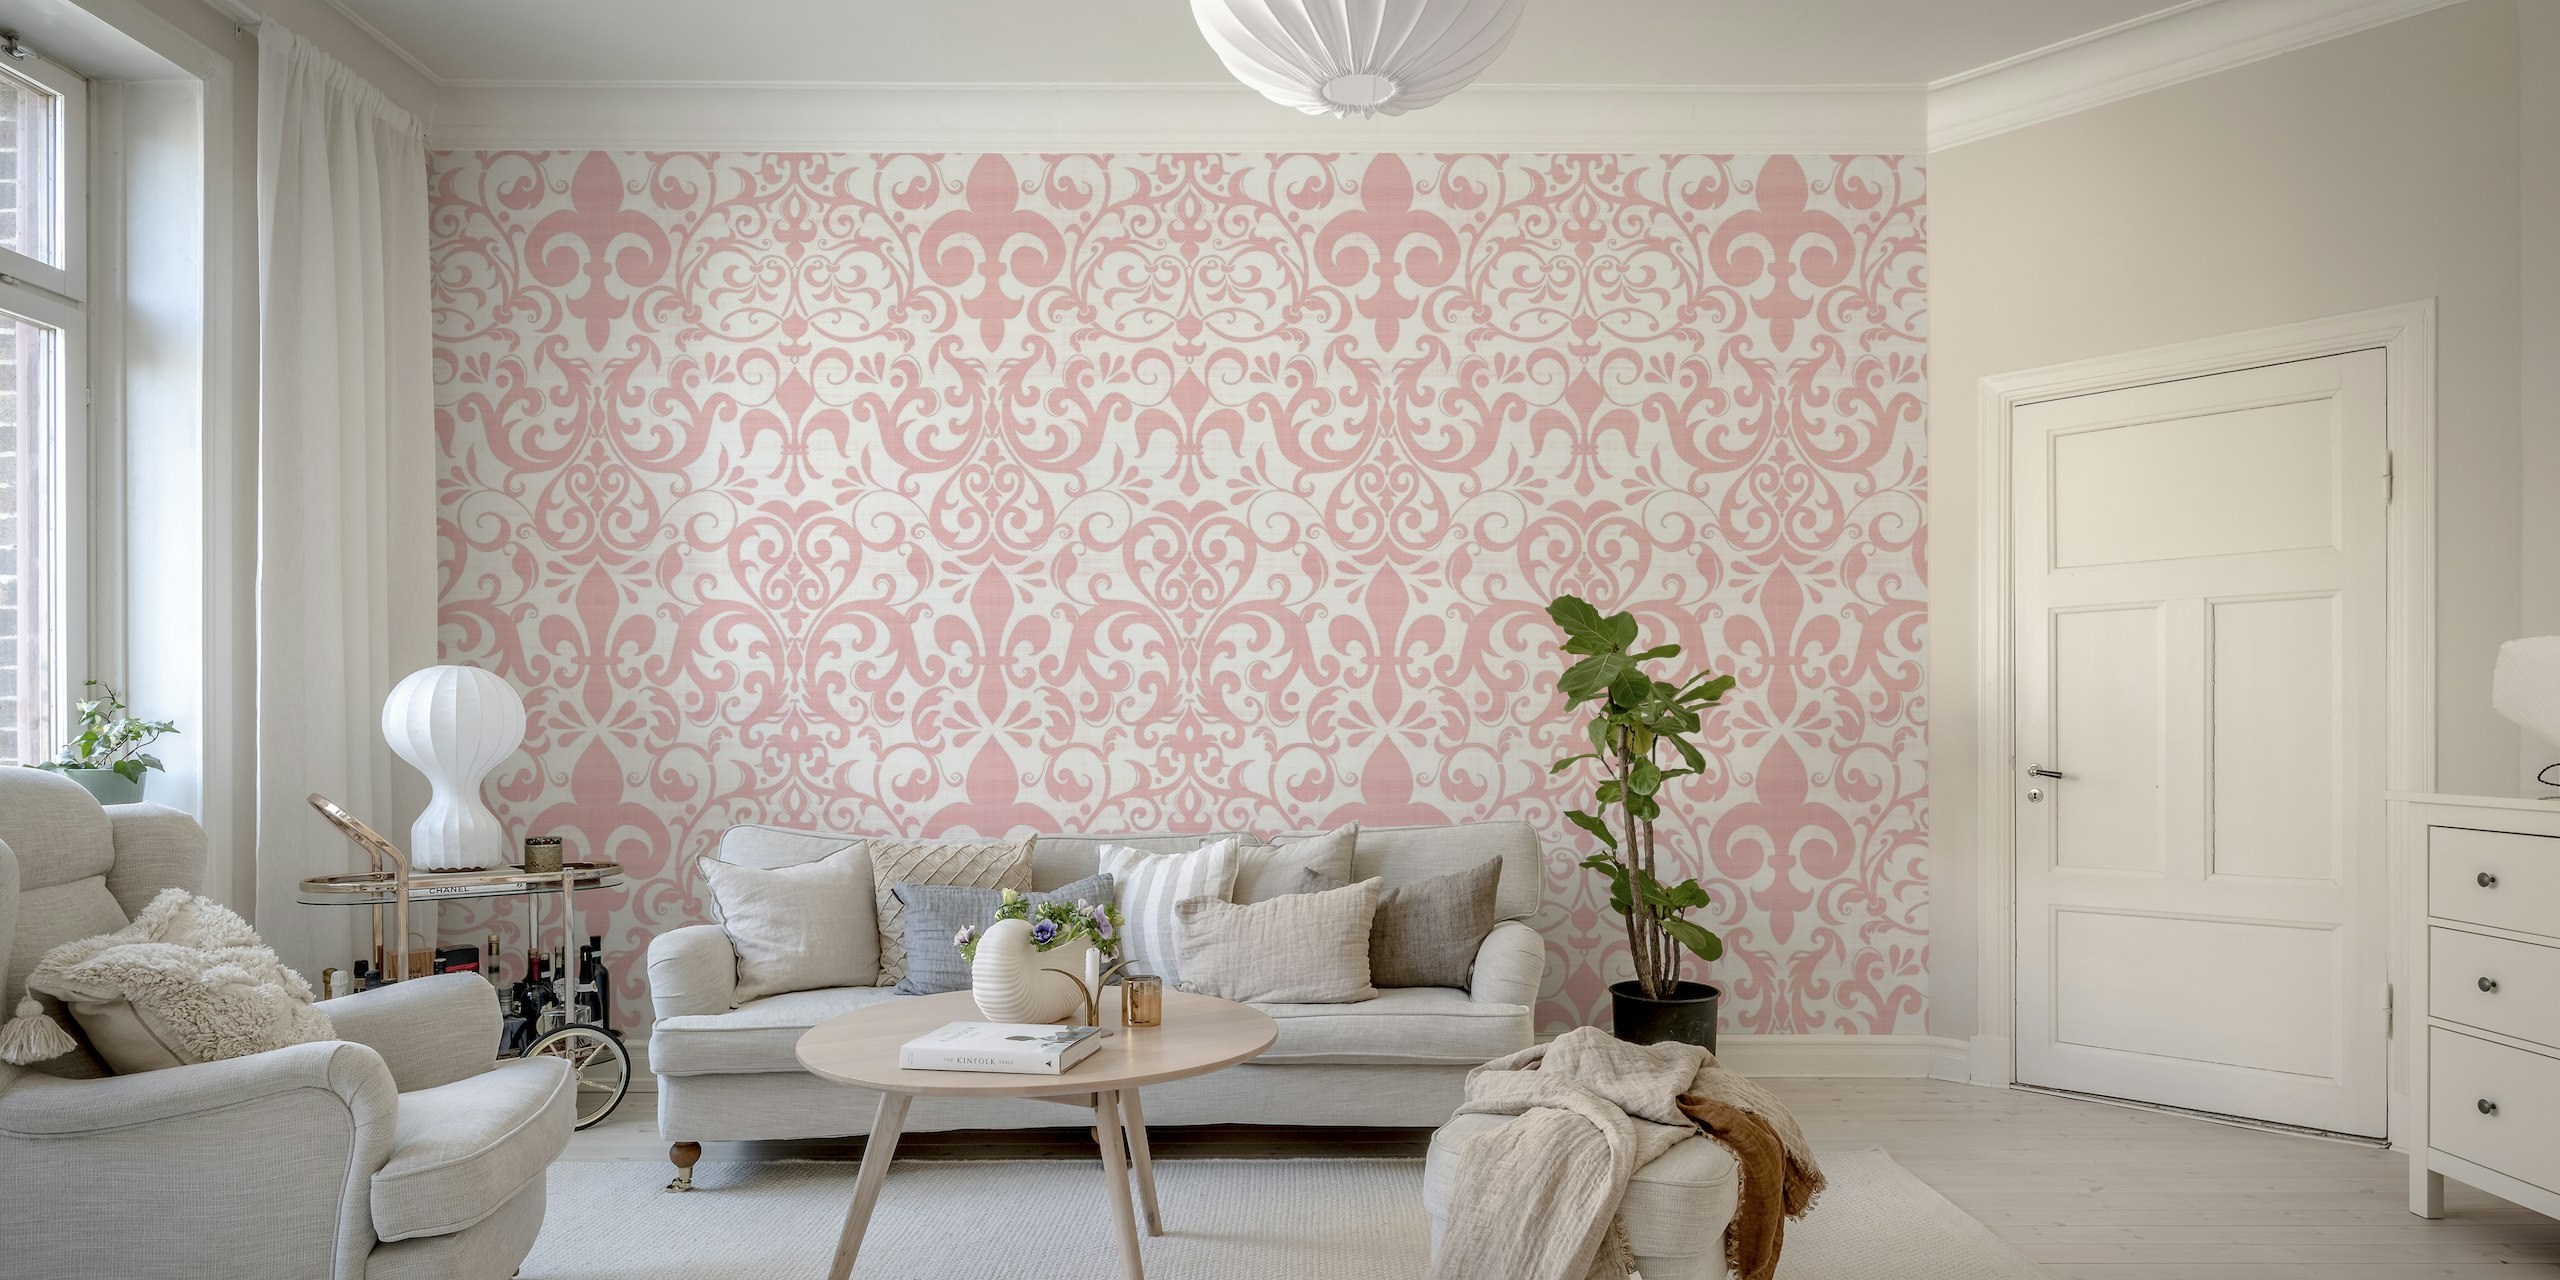 Mural de parede rosa pastel com uma flor de lis clássica e padrão de arabescos para um visual de linho francês.